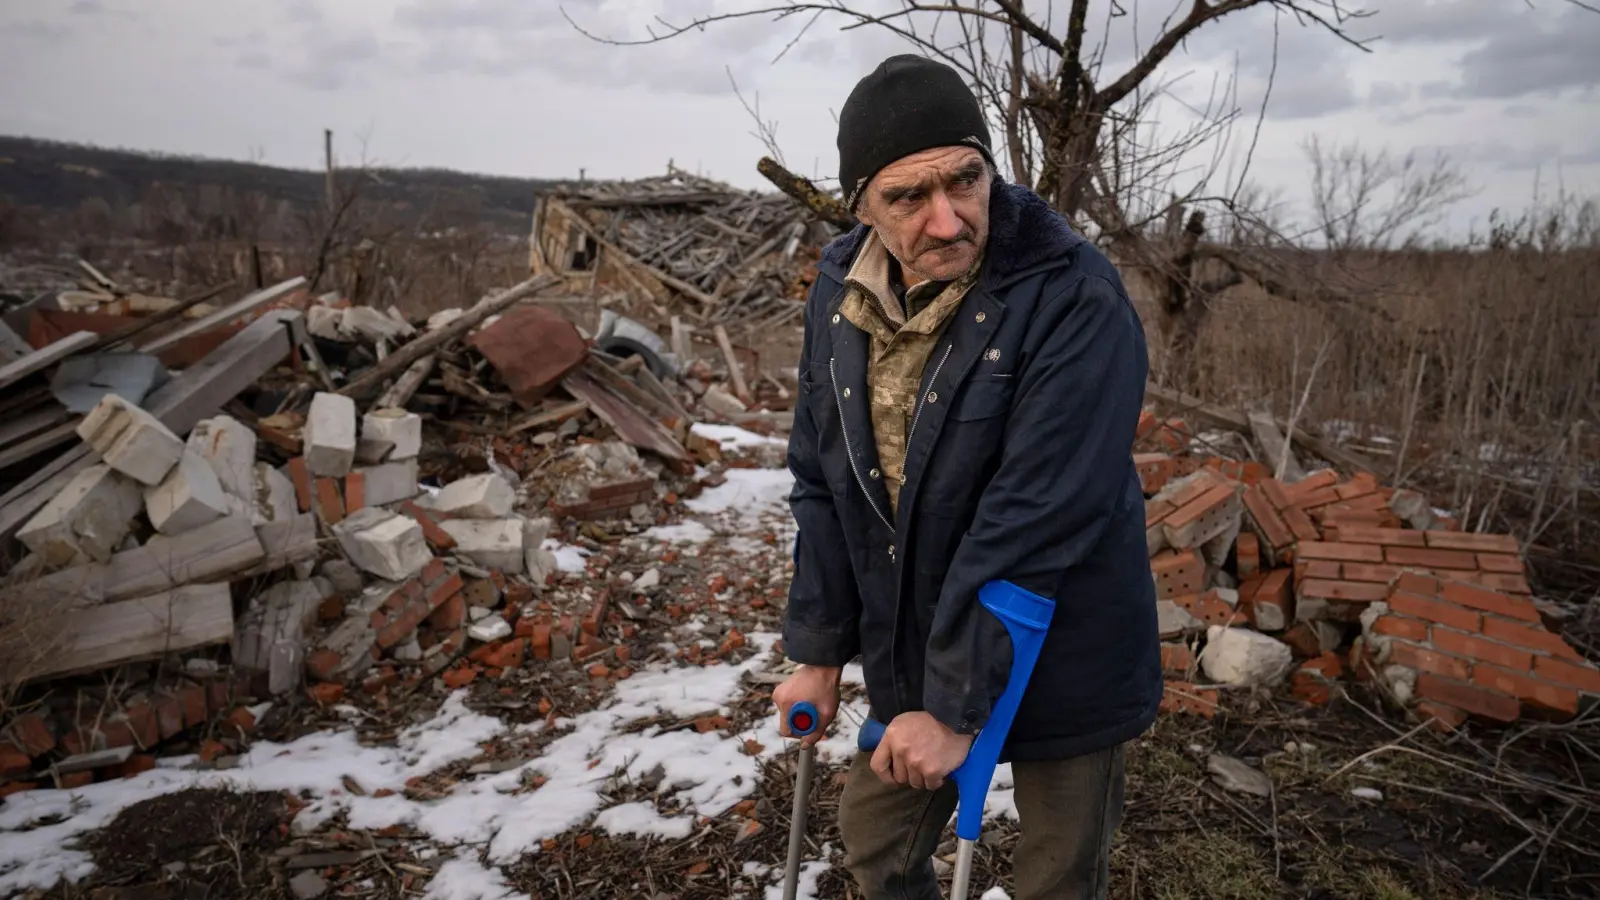 Andrii Cherednichenko (50), der von einer Landmine verletzt wurde, steht auf Krücken vor den Ruinen seines Hauses im ukrainischen Kamjanka. (Foto: Vadim Ghirda/AP/dpa)